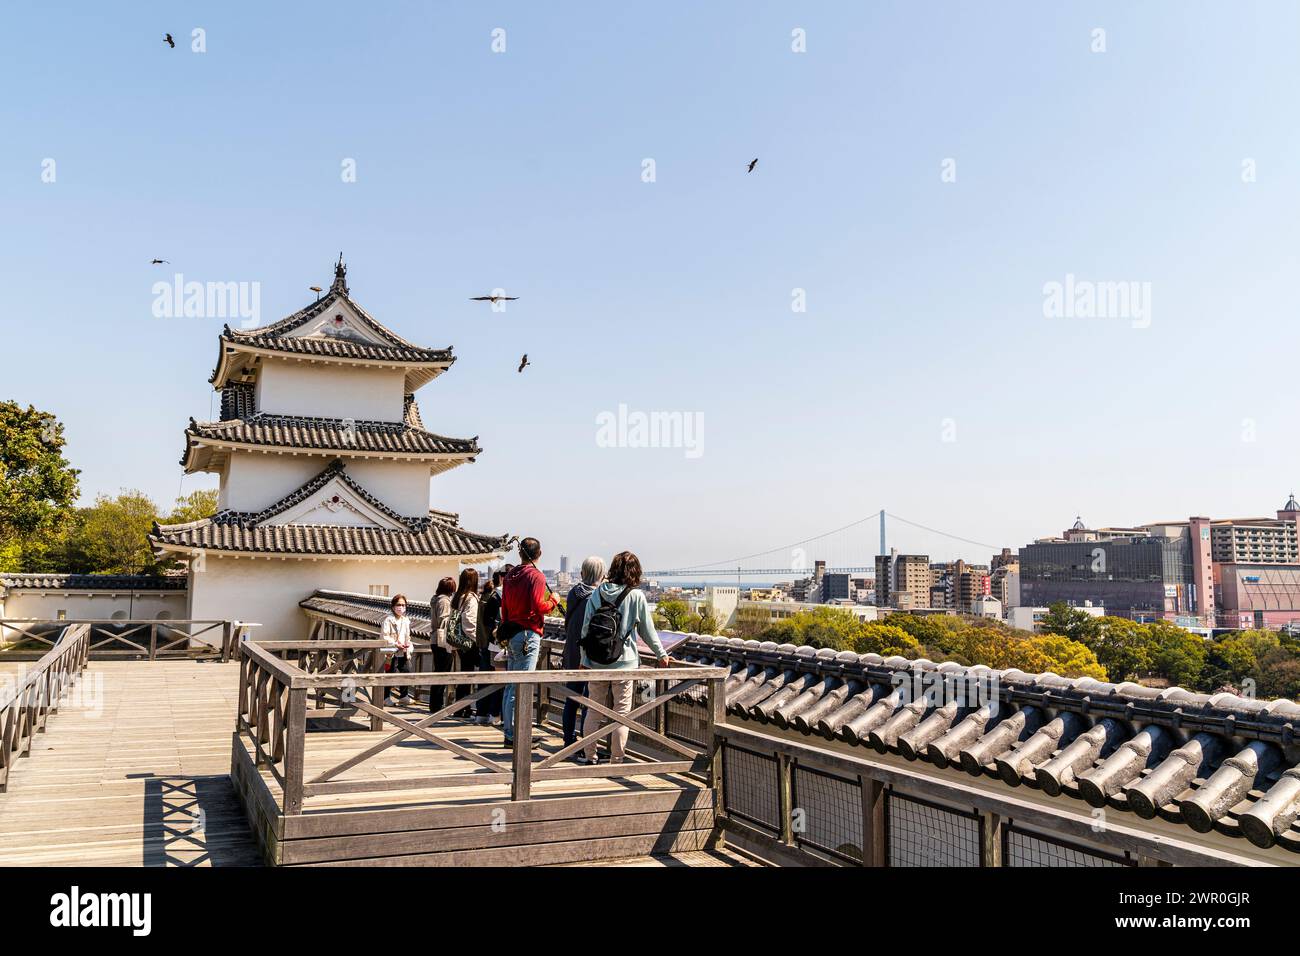 Menschen, die auf einem hohen Punkt an den Mauern der Burg Akashi stehen und die Drachen beobachten, die um den Tatsumi Yagura fliegen, einem Turm in der Frühlingssonne Stockfoto